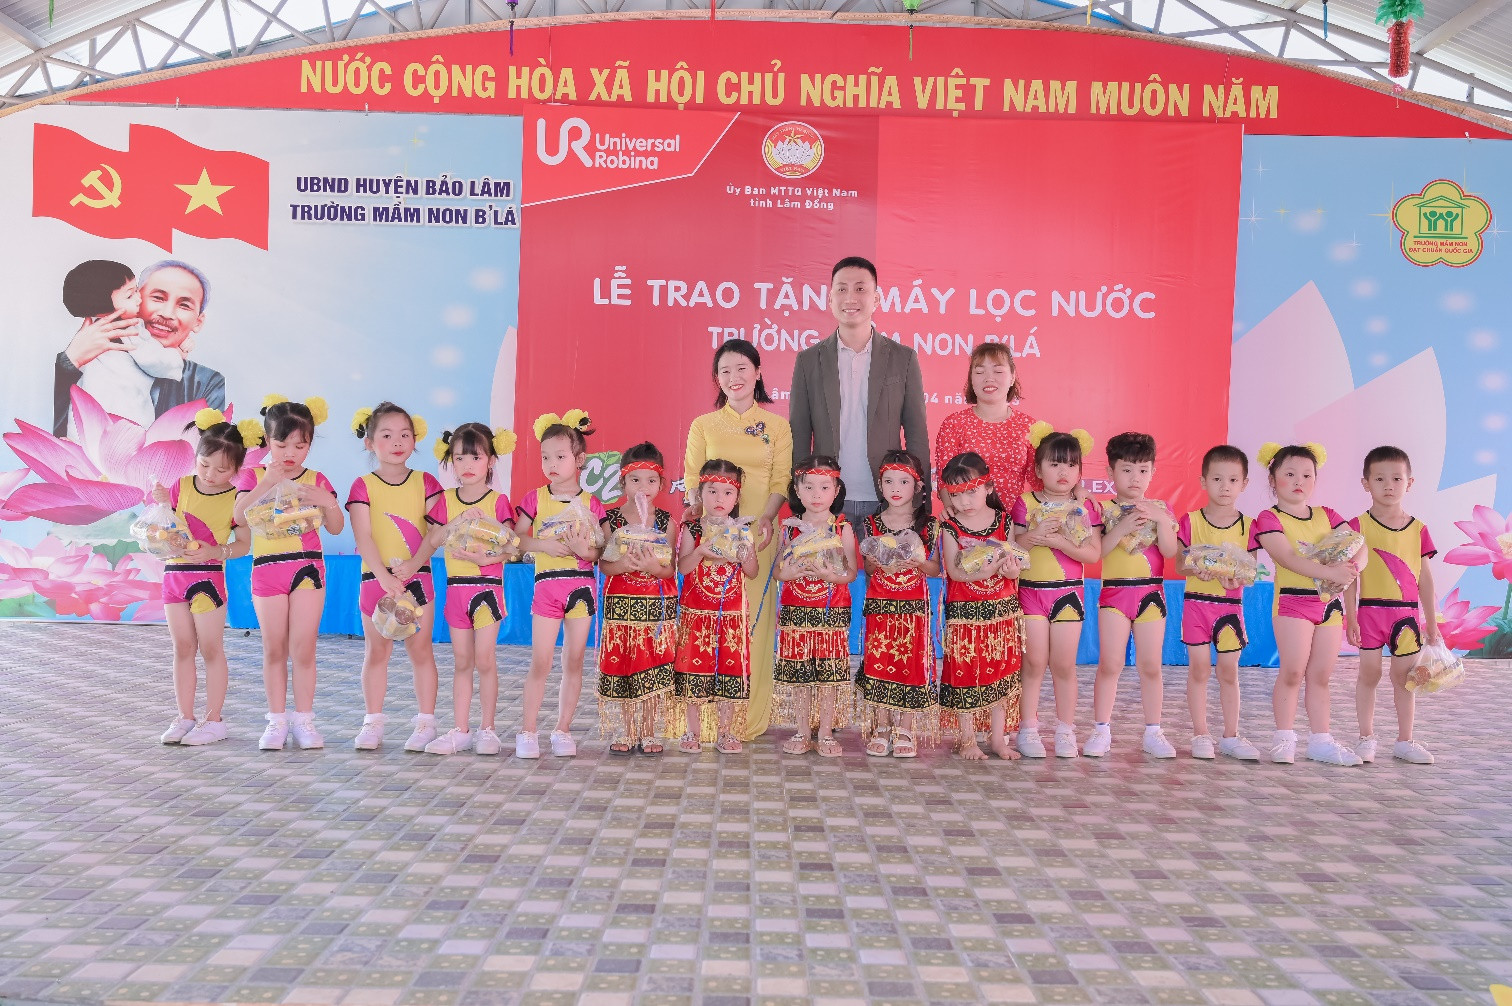 Các em học sinh tại Trường mầm non B’Lá đón nhận những phần quà từ đại diện Công ty TNHH URC Việt Nam.